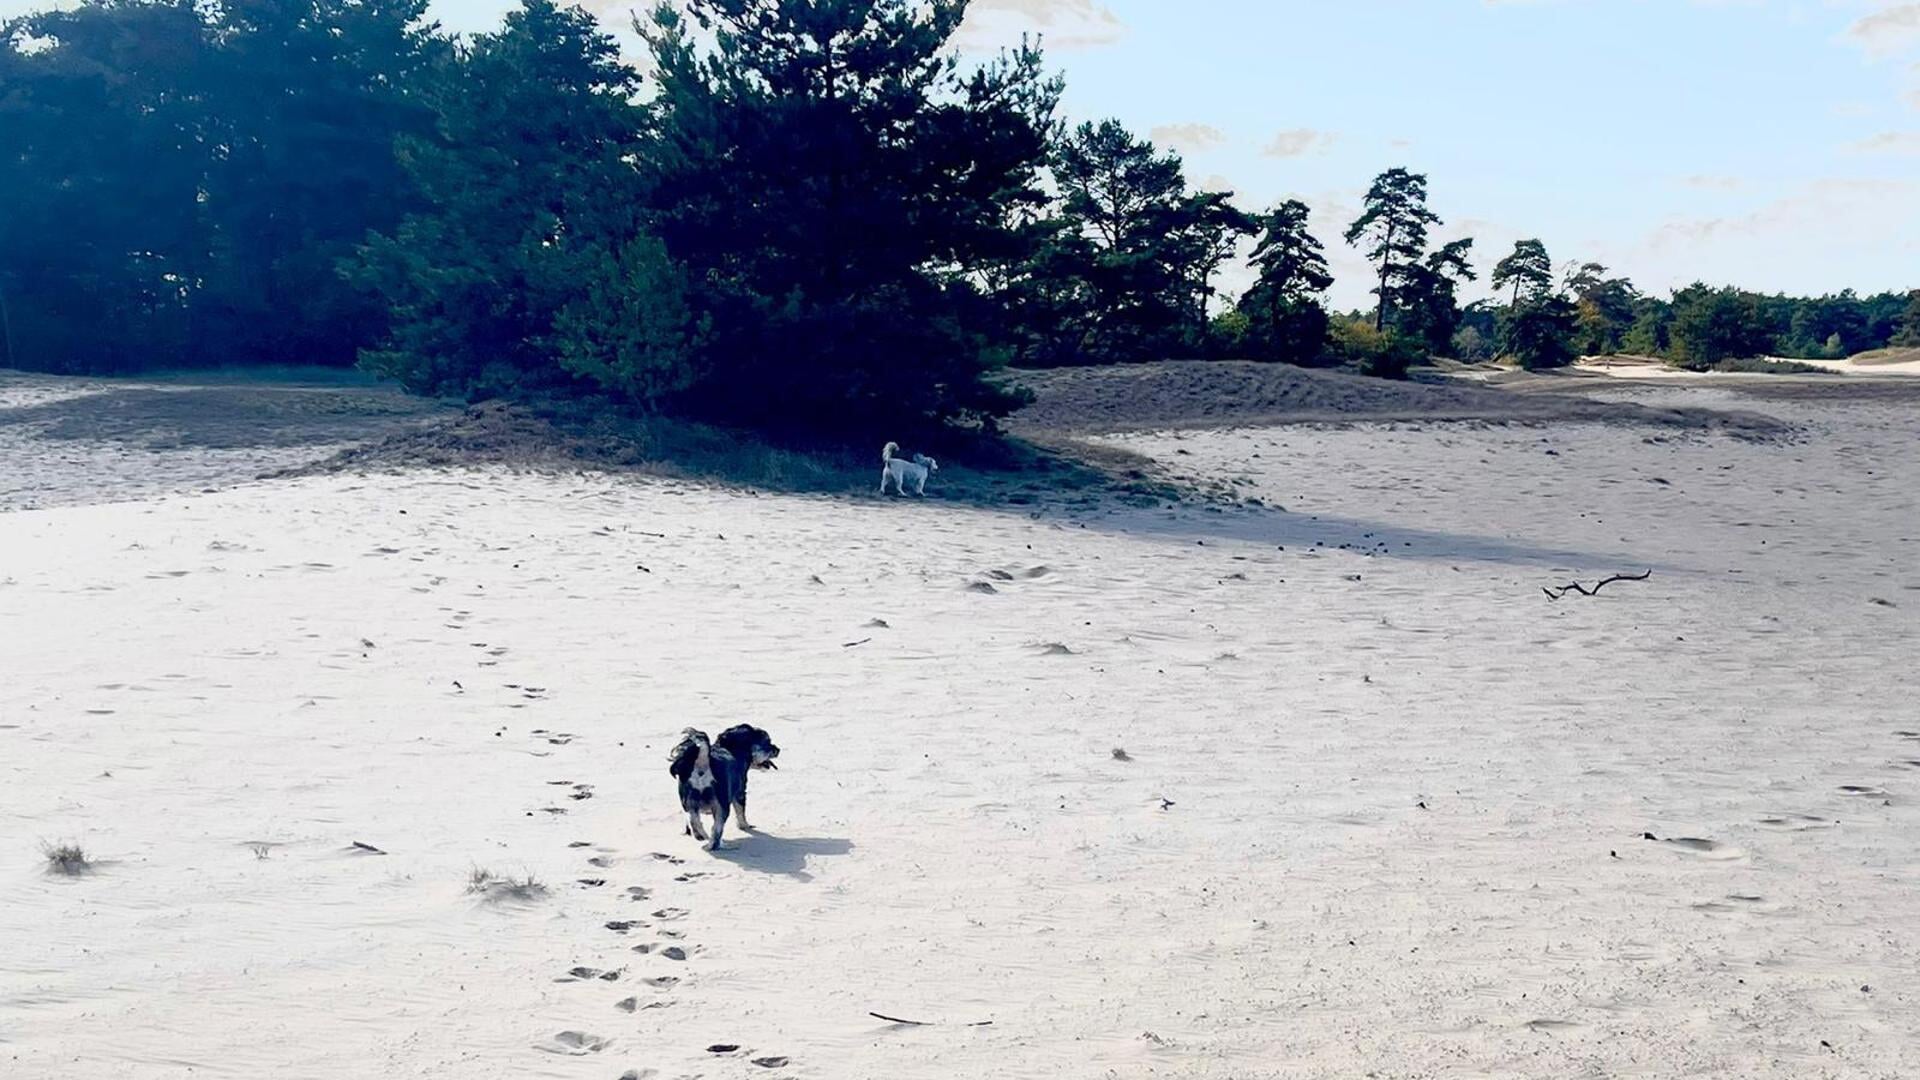  Op de zandverstuiving dwalen honden niet meer los rond. Foto: Wijnand Kooijmans 